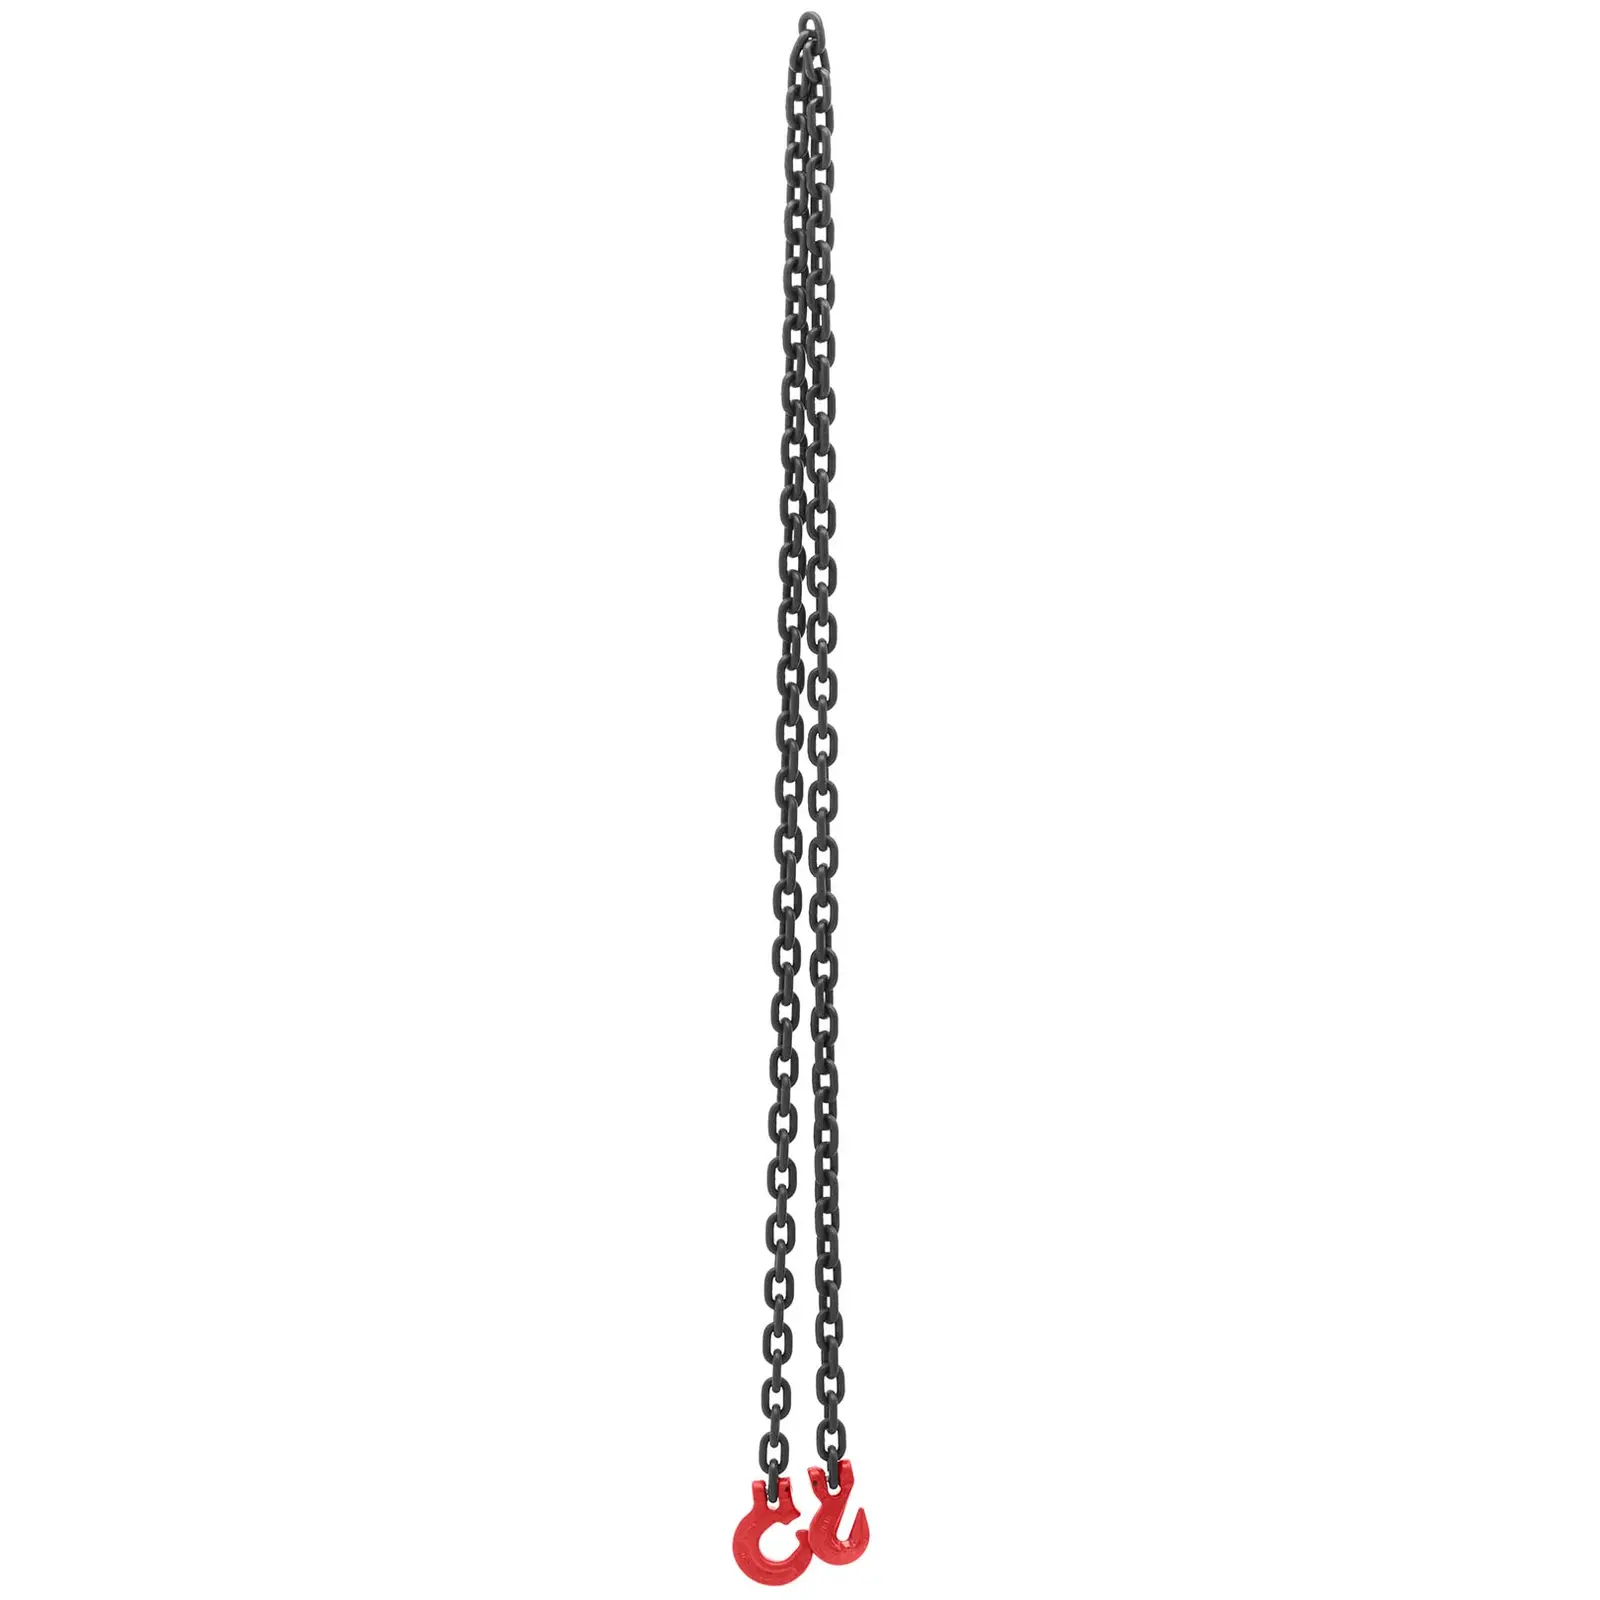 Sidontaketju - 8000 kg - 2,5 m - musta/punainen